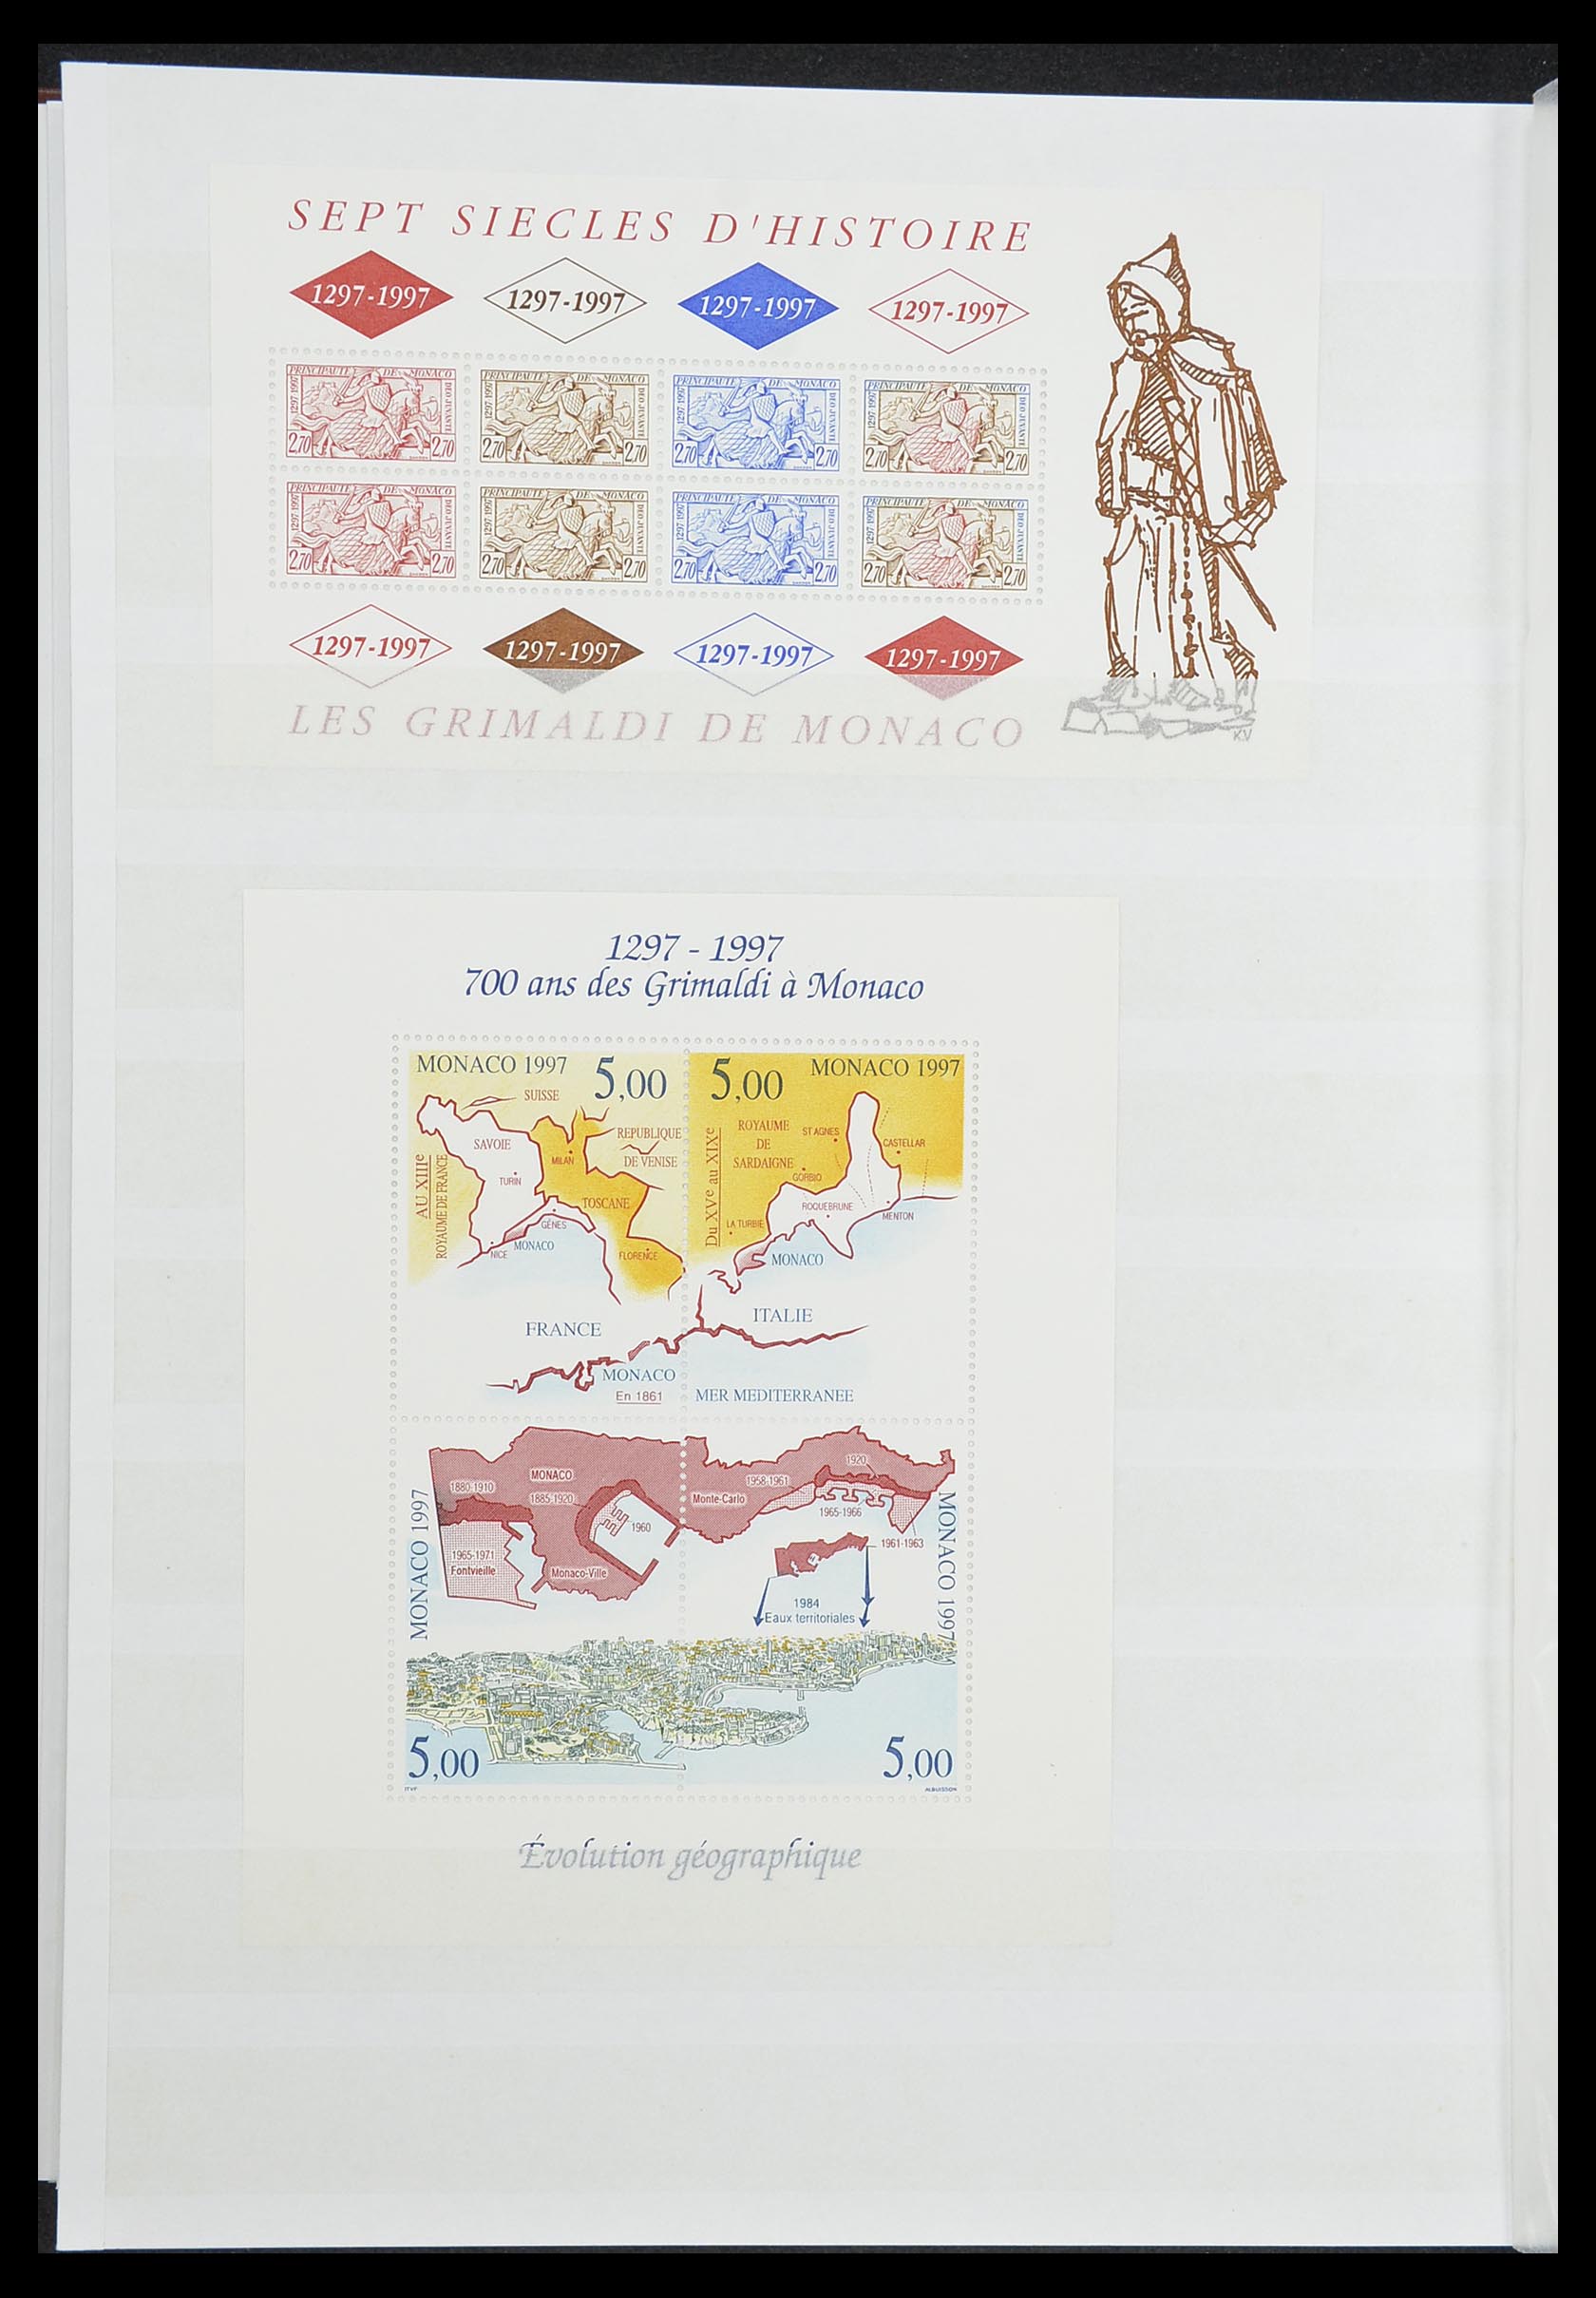 33833 029 - Stamp collection 33833 Monaco souvenir sheets 1979-2015.